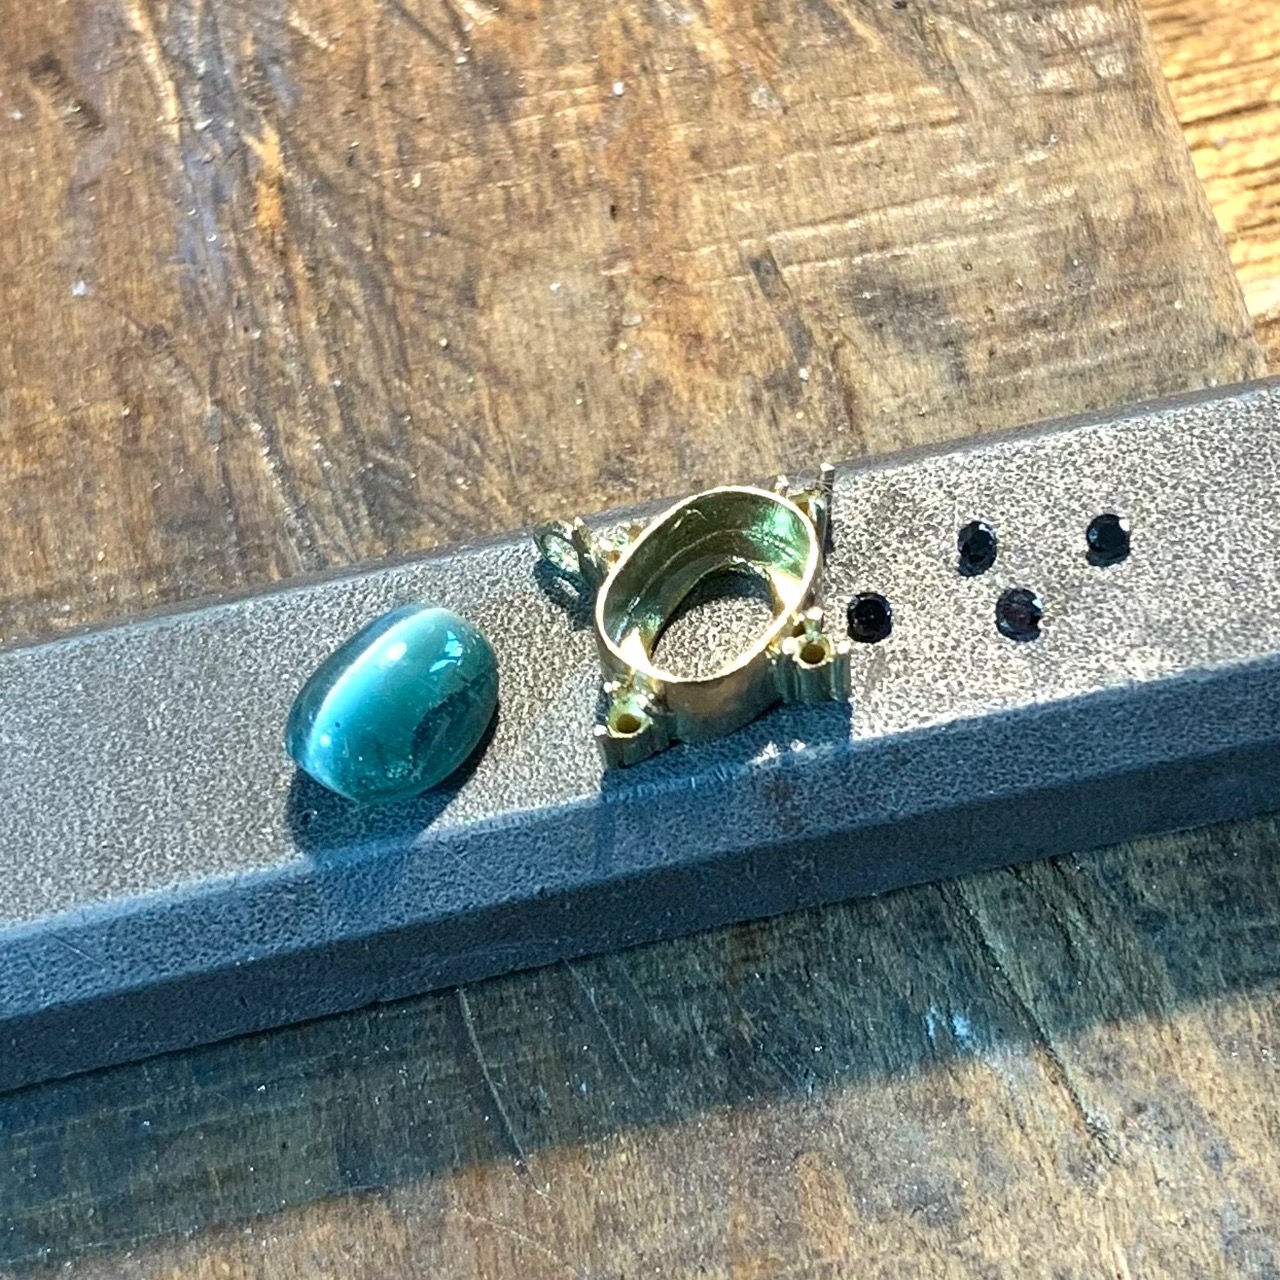 トルマリンキャッツアイにメレーのブラックダイヤモンドを添わせたネックレスの製作写真です。